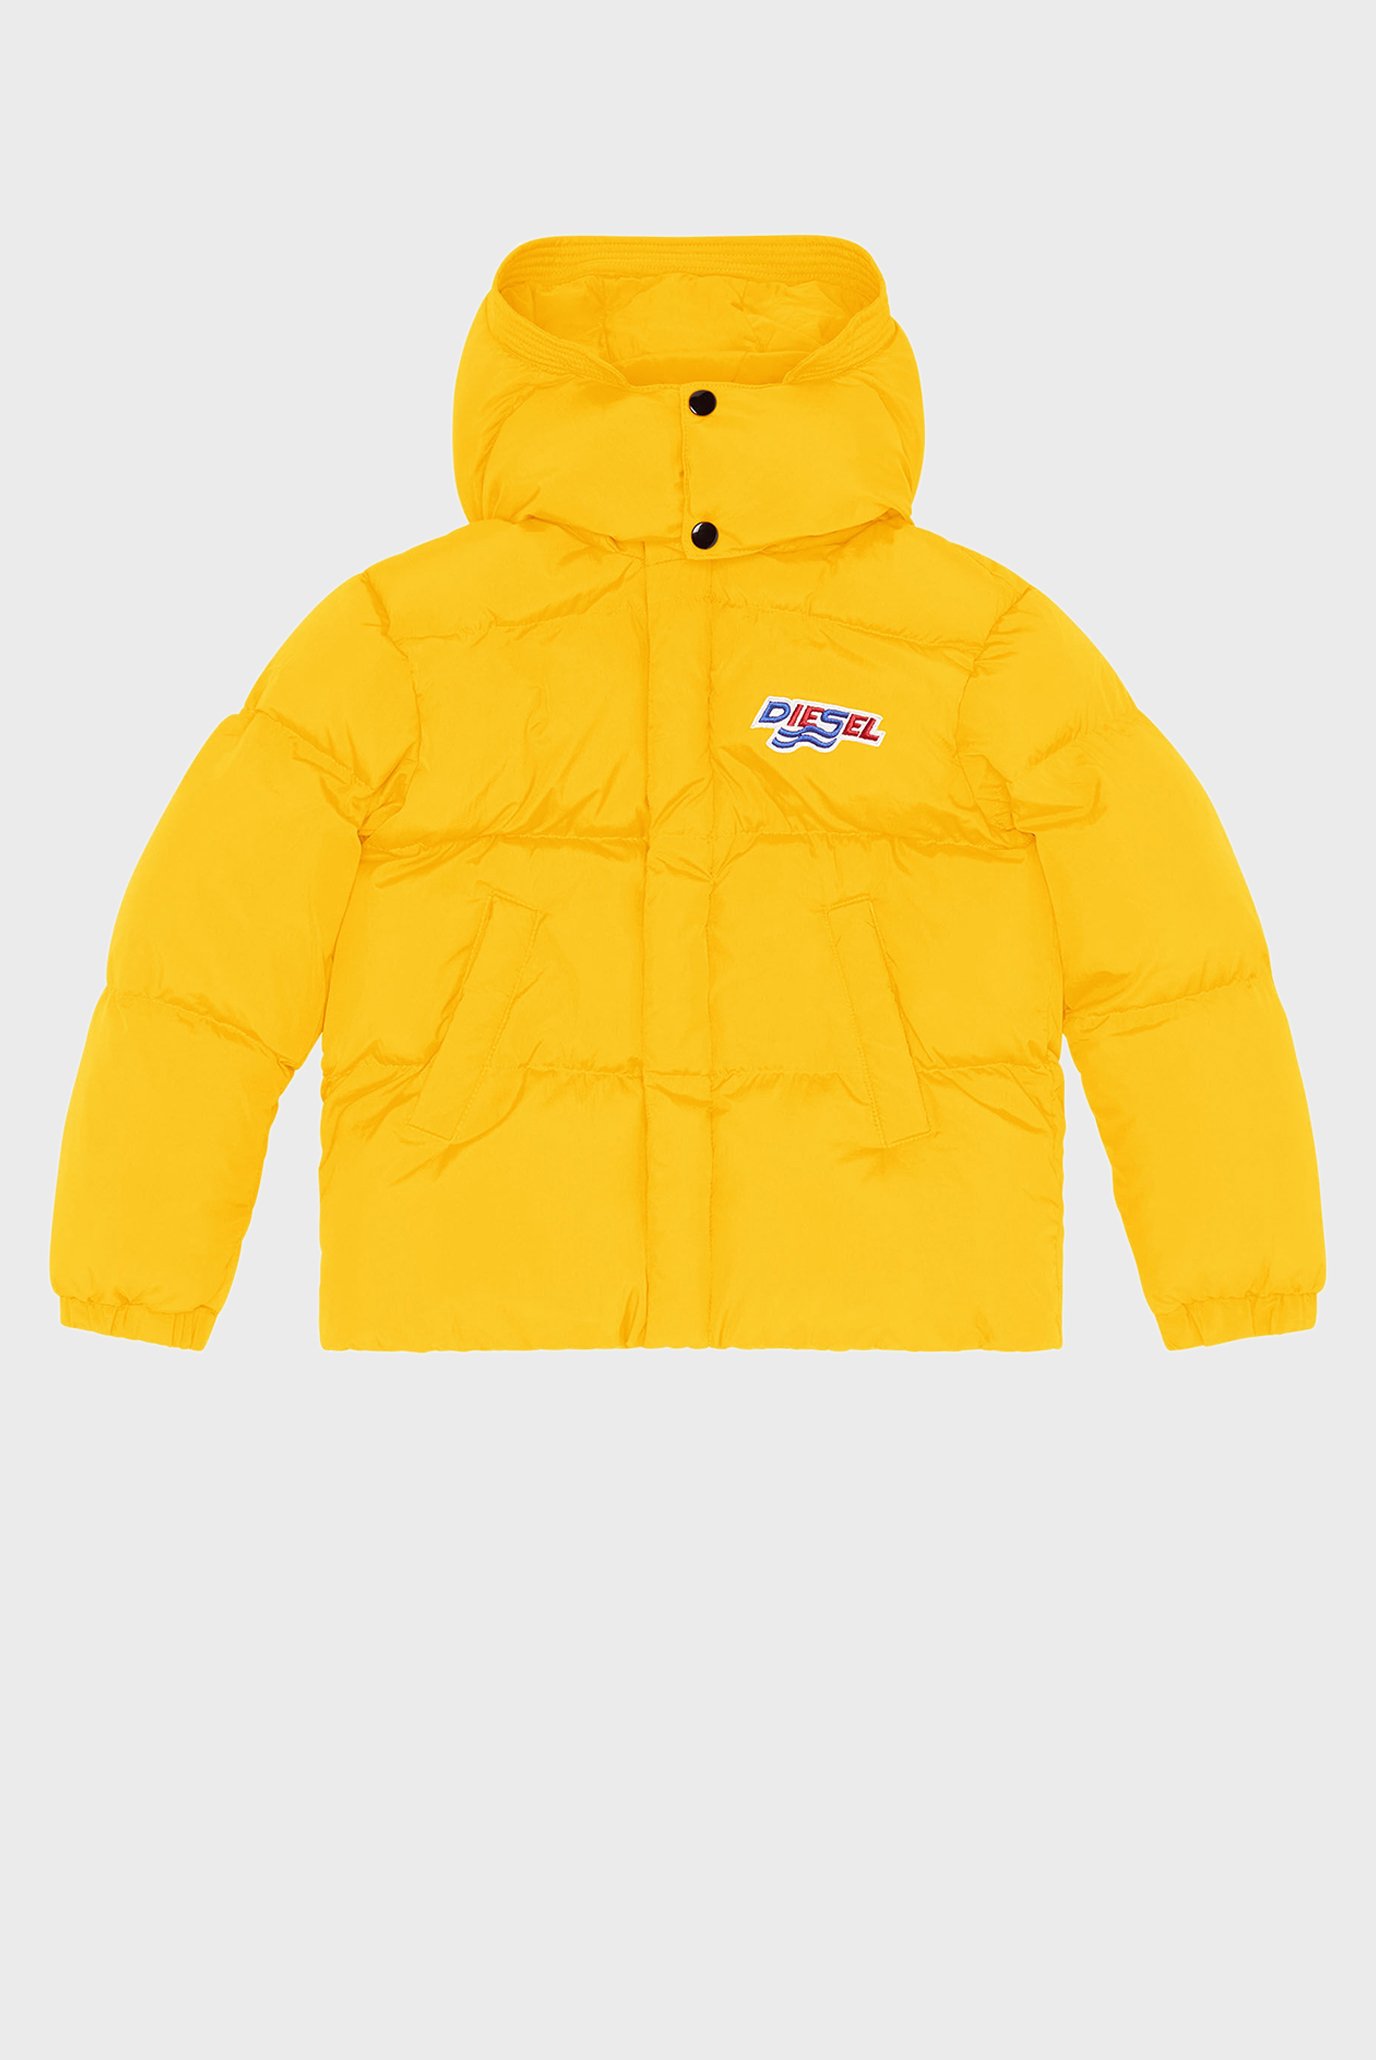 Детская желтая куртка JROLF 1